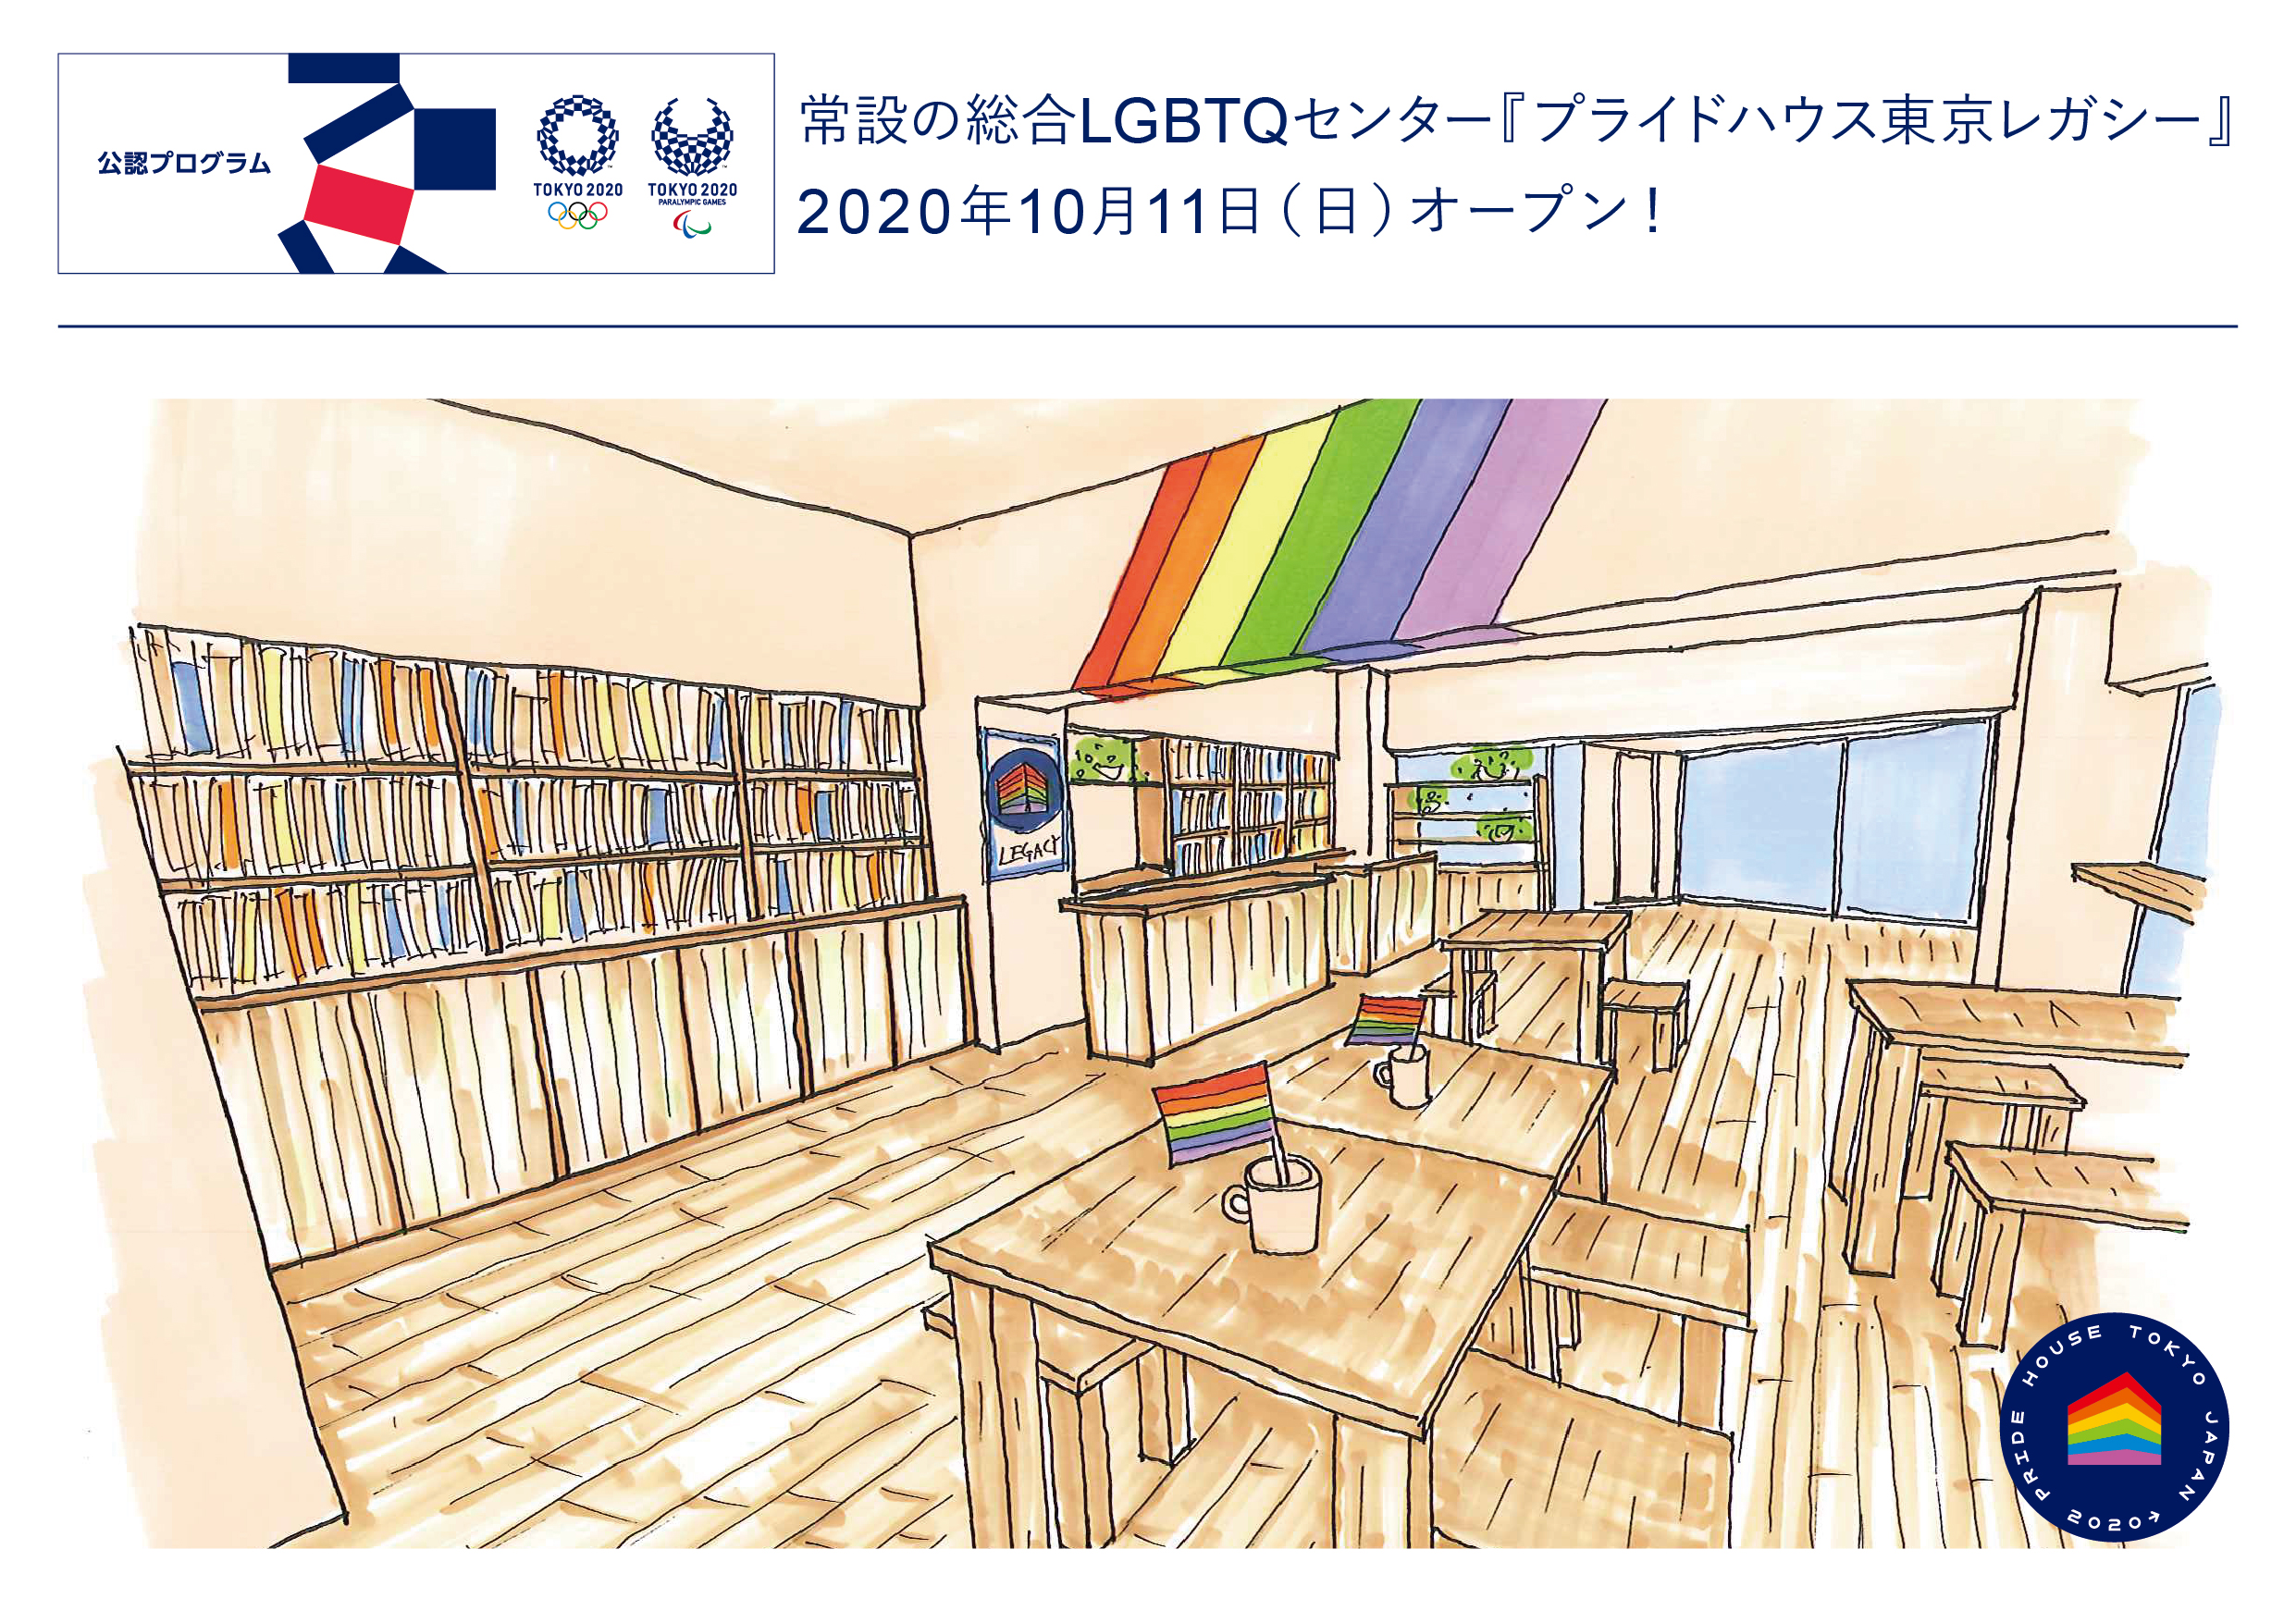 常設の総合lgbtq センター プライドハウス東京レガシー が 10月11日にオープン 東京 公認プログラム として情報発信 組織委員会の公認となるのは 世界のプライドハウス史上で初めての試み Npo法人グッド エイジング エールズのプレスリリース